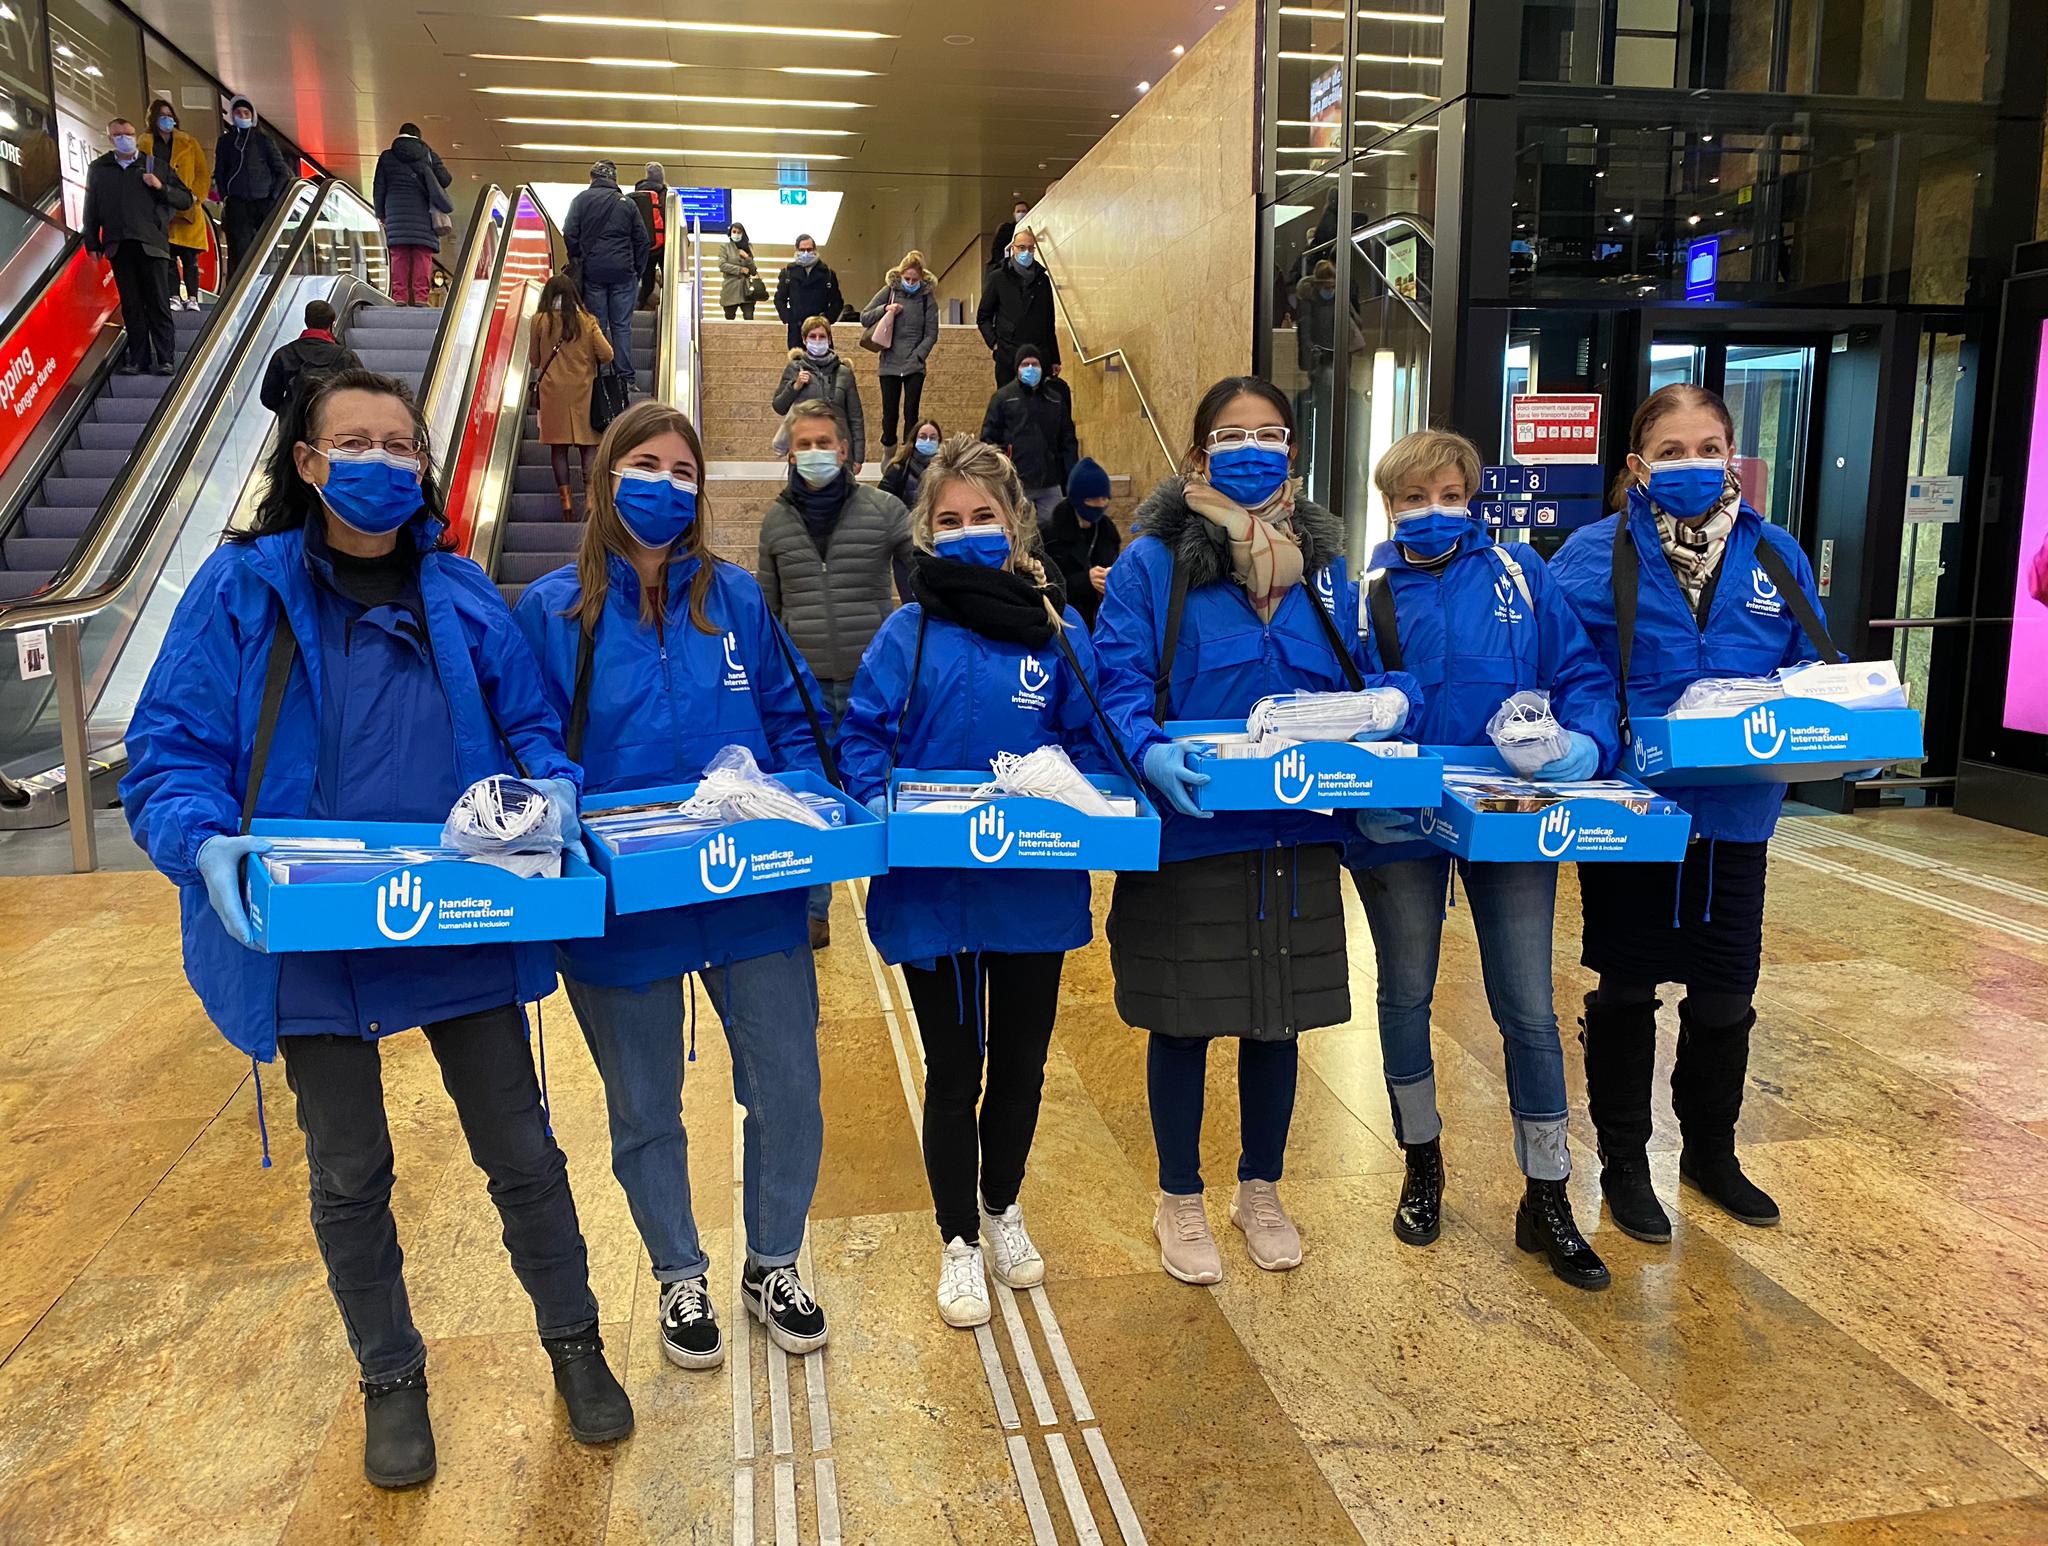 Freiwillige, die am Genfer Bahnhof Masken verteilen